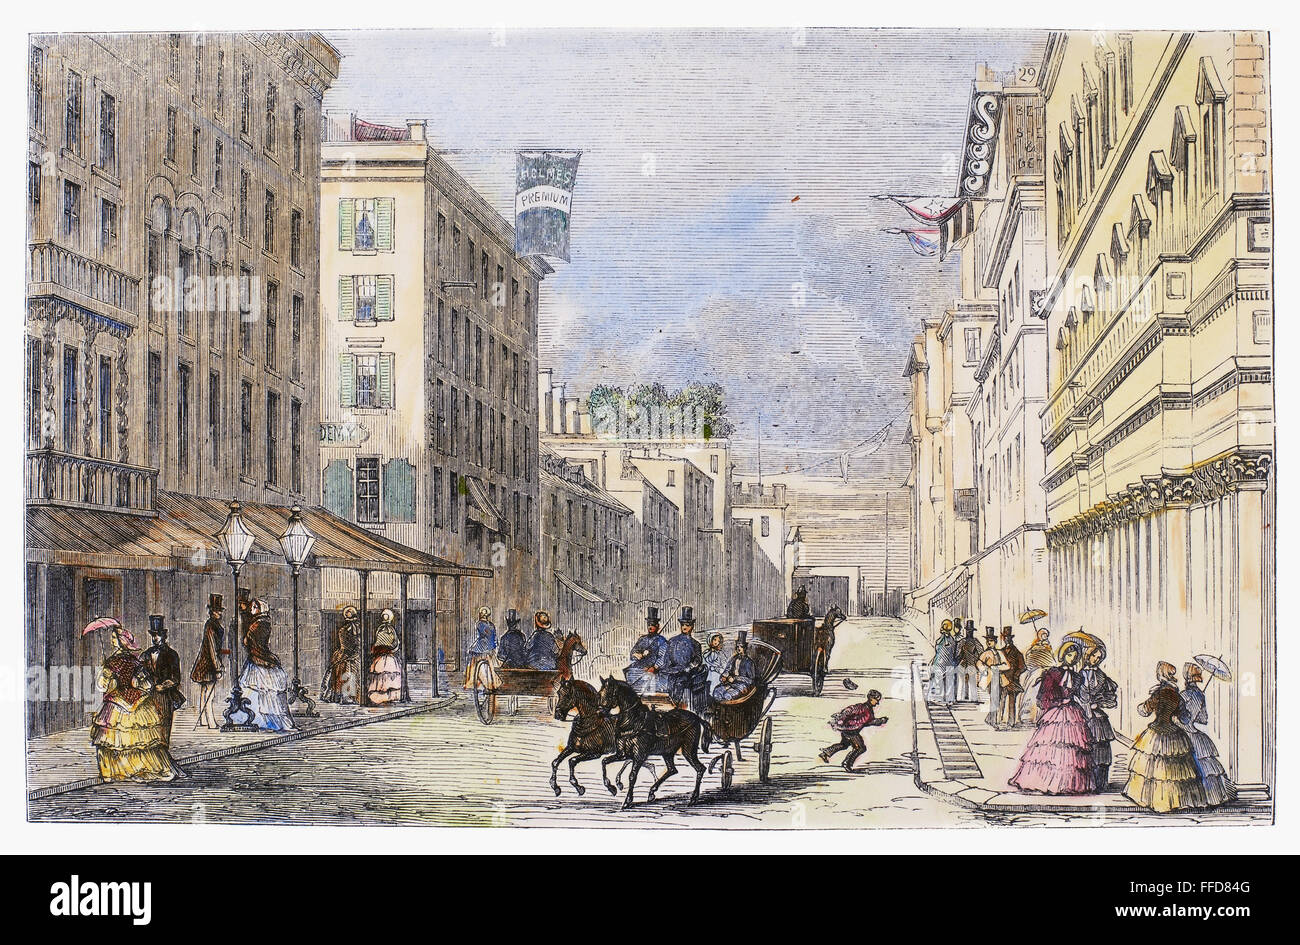 BALTIMORE, 1856. /nStreet scene in Baltimore, Maryland. Wood engraving, English, 1856. Stock Photo